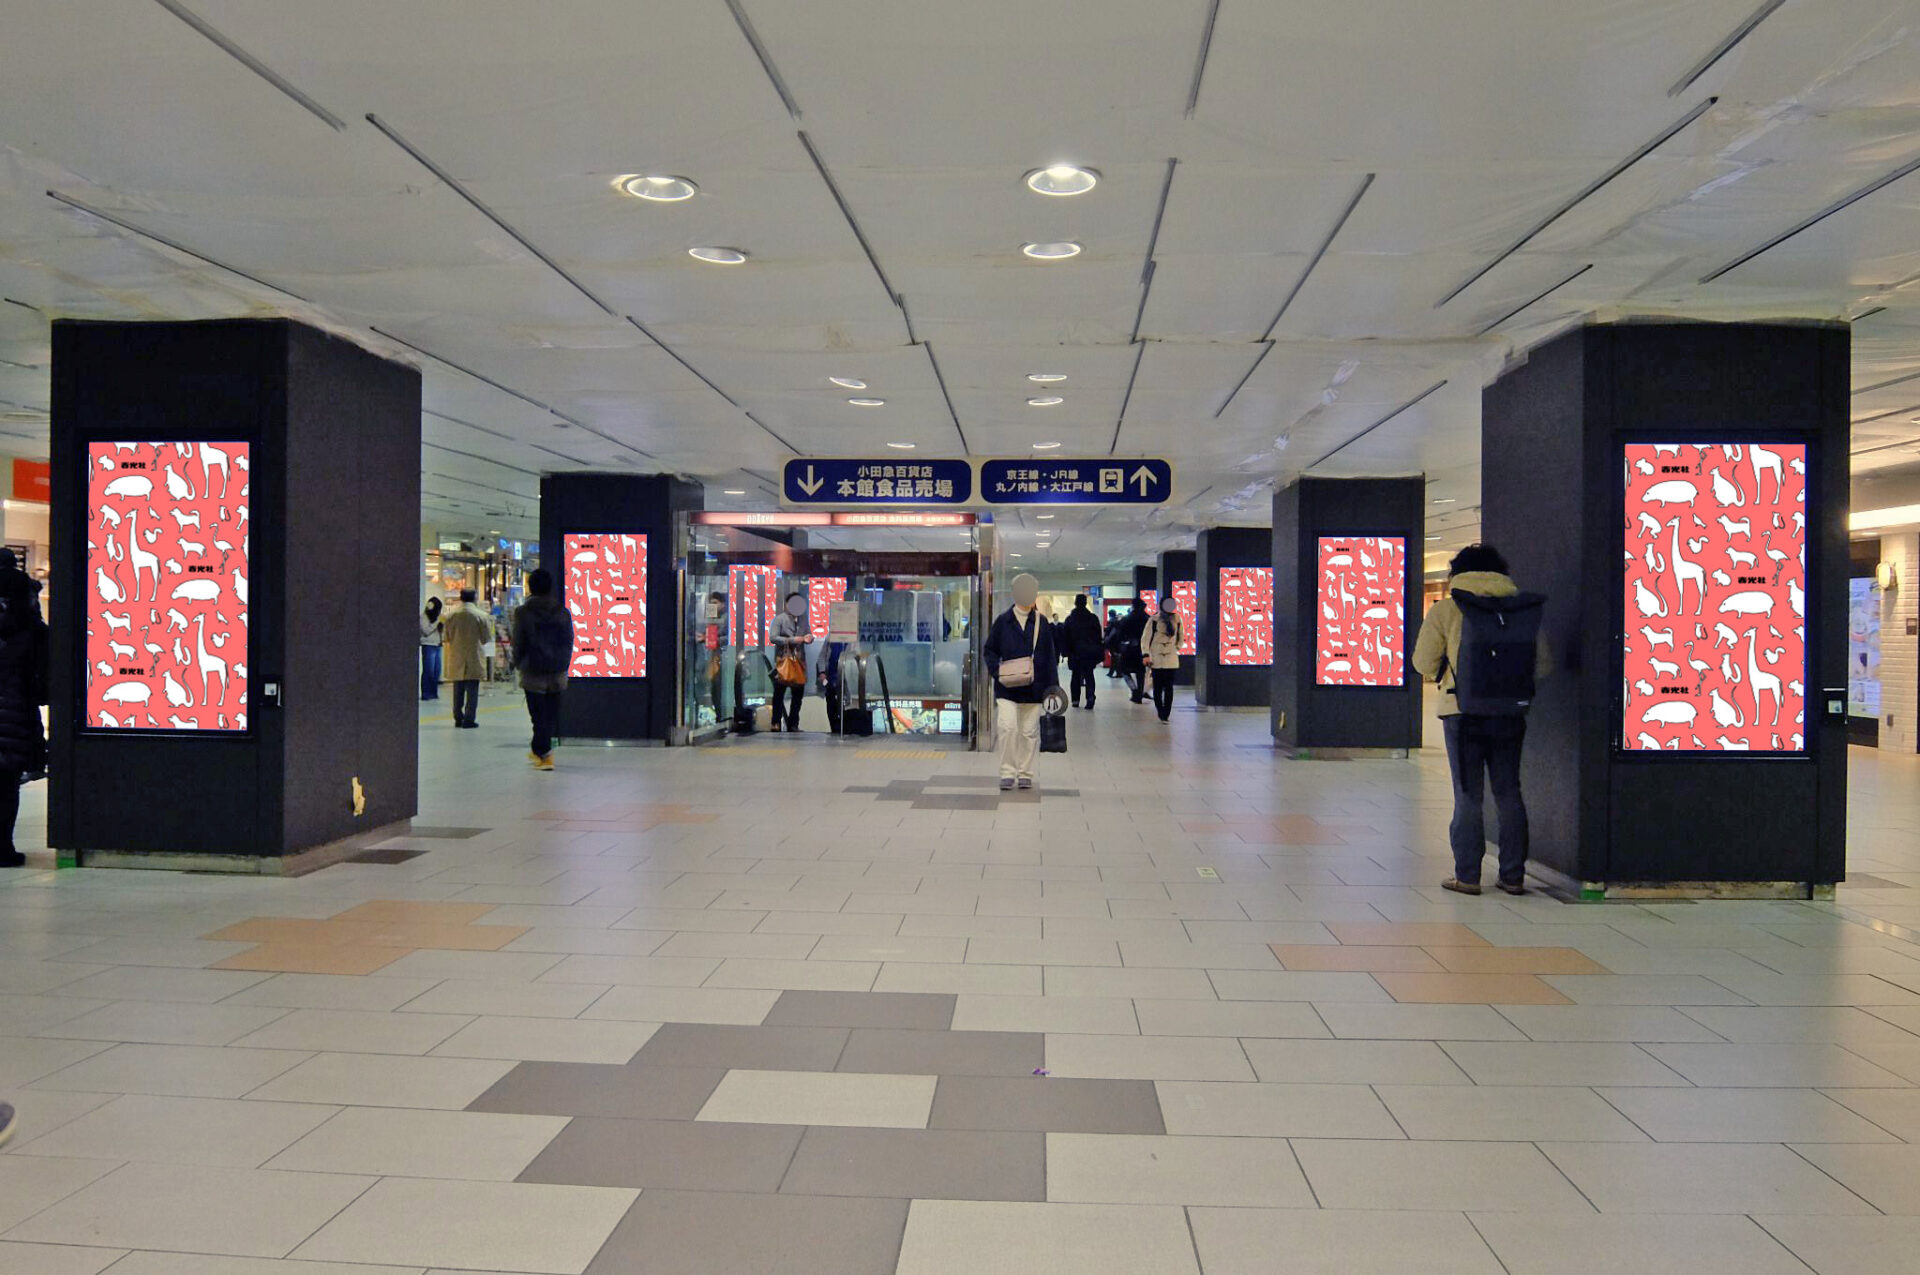 小田急線新宿駅の西口と南口の改札外に設置されている縦型のデジタルサイネージ